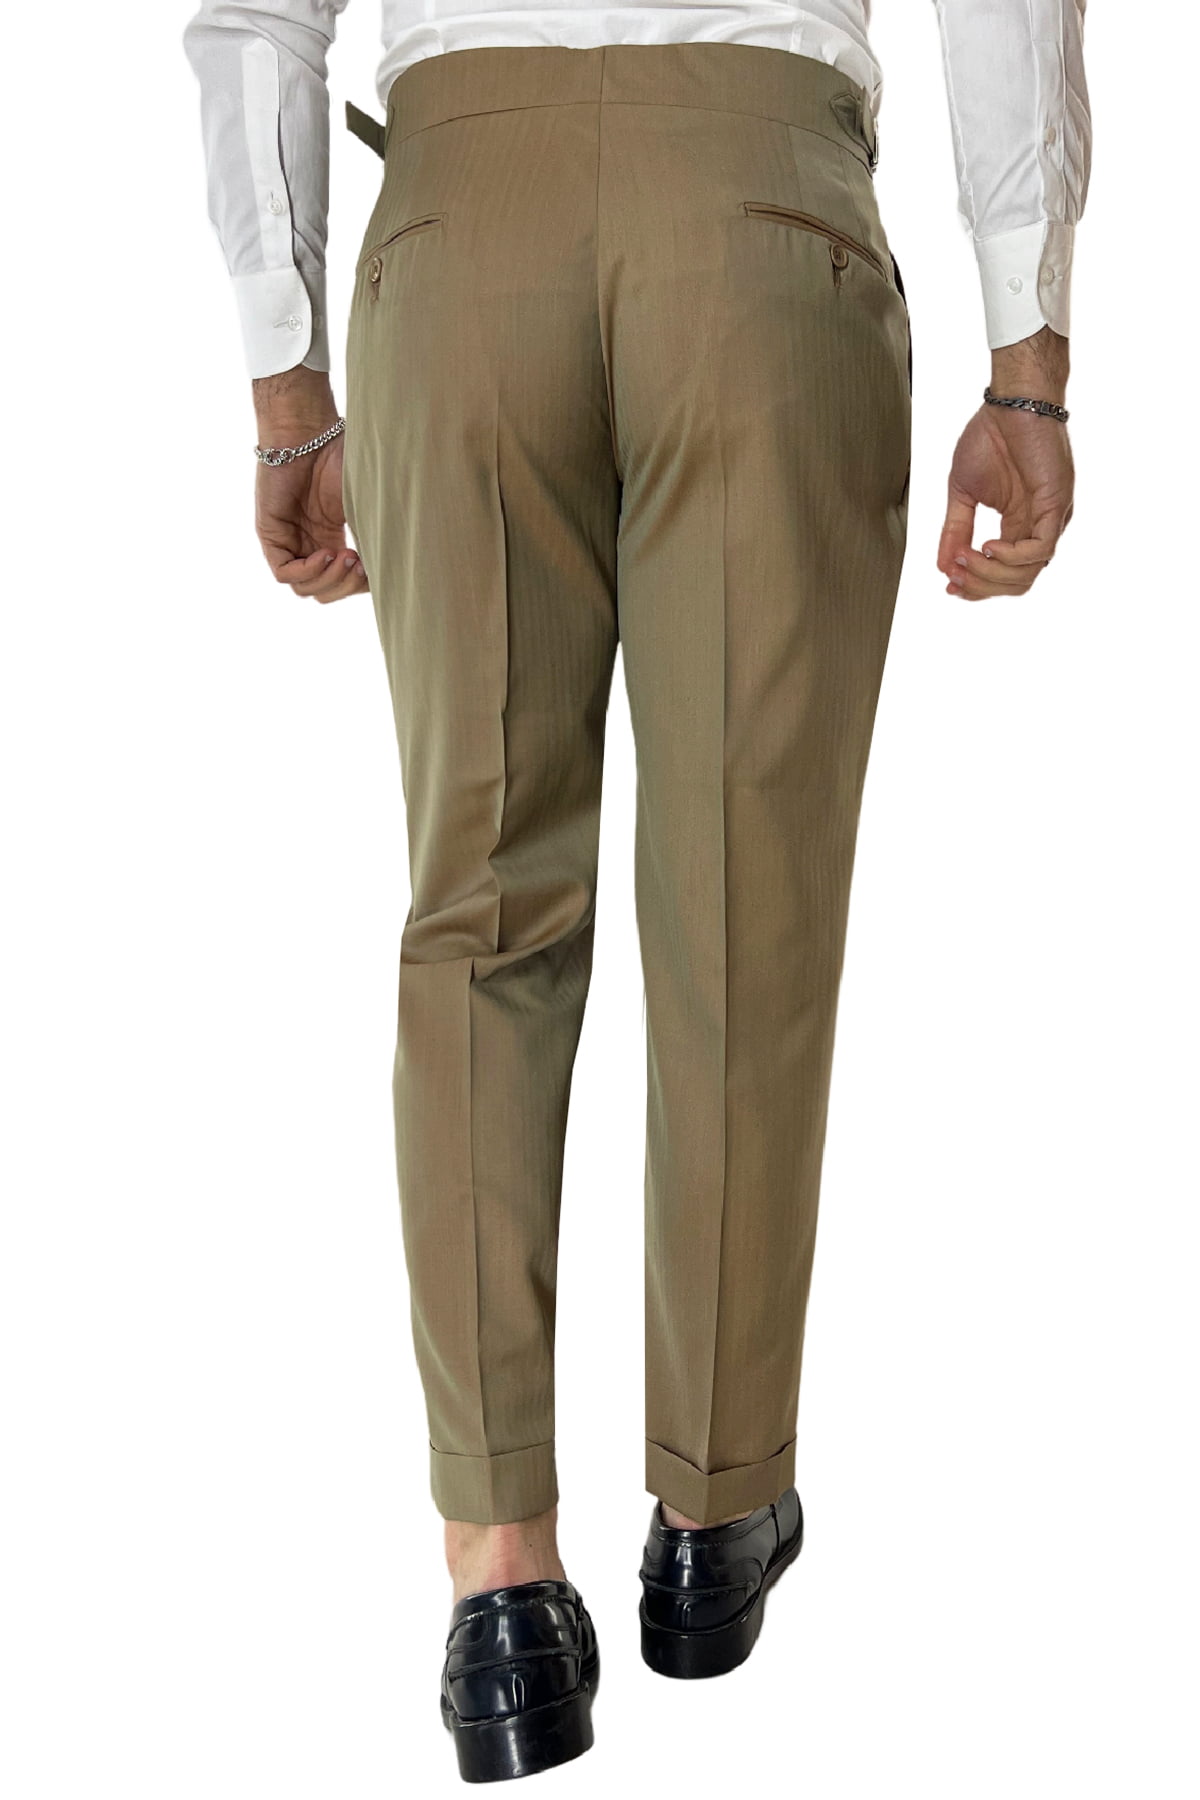 Pantalone uomo Fango Solaro in fresco lana e seta Holland & Sherry vita alta con pinces fibbie laterali e risvolto 4cm